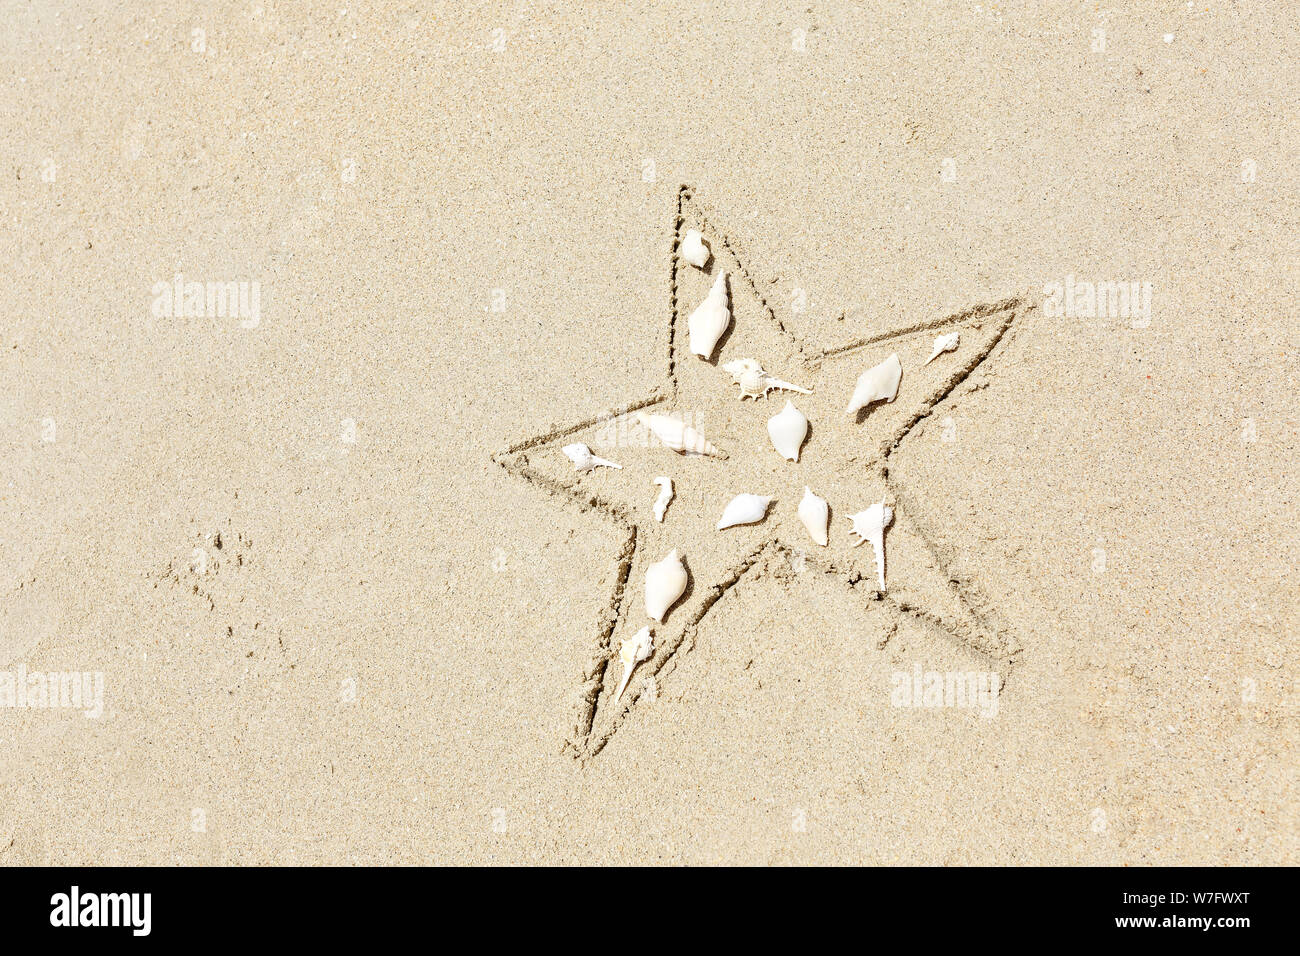 Star Shell image sur le sable journée d'été. Vue de dessus de la création. Copy space Banque D'Images